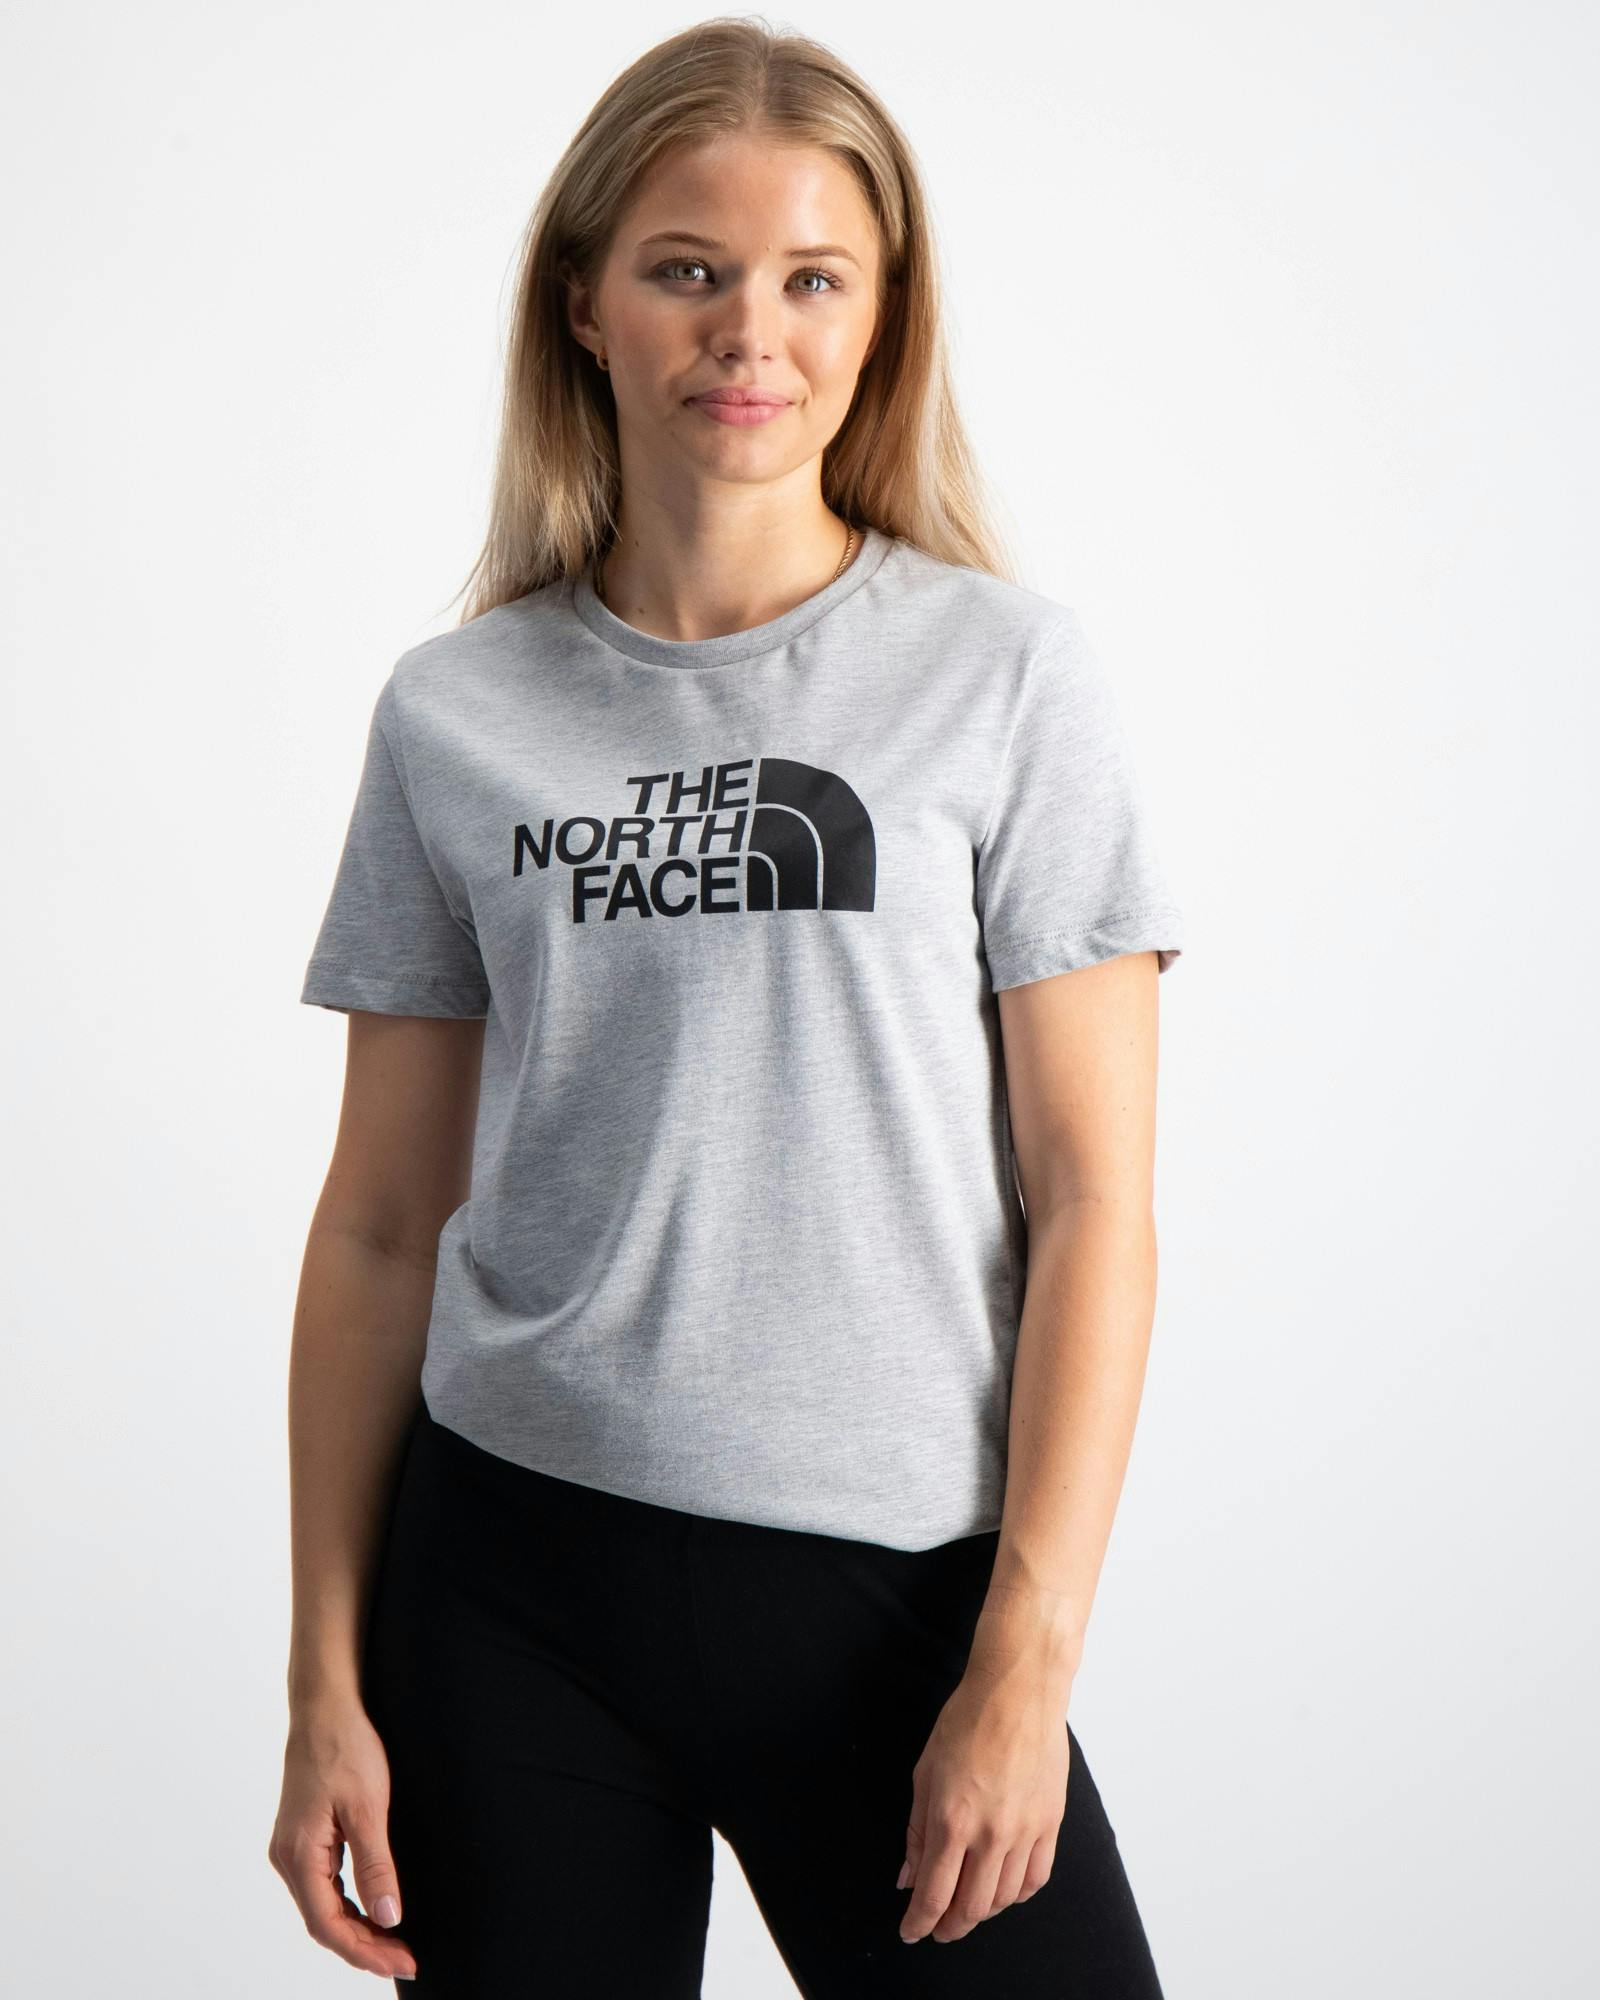 The North Face T-Shirts Kinder Jugendliche Brand und | Kids Store für